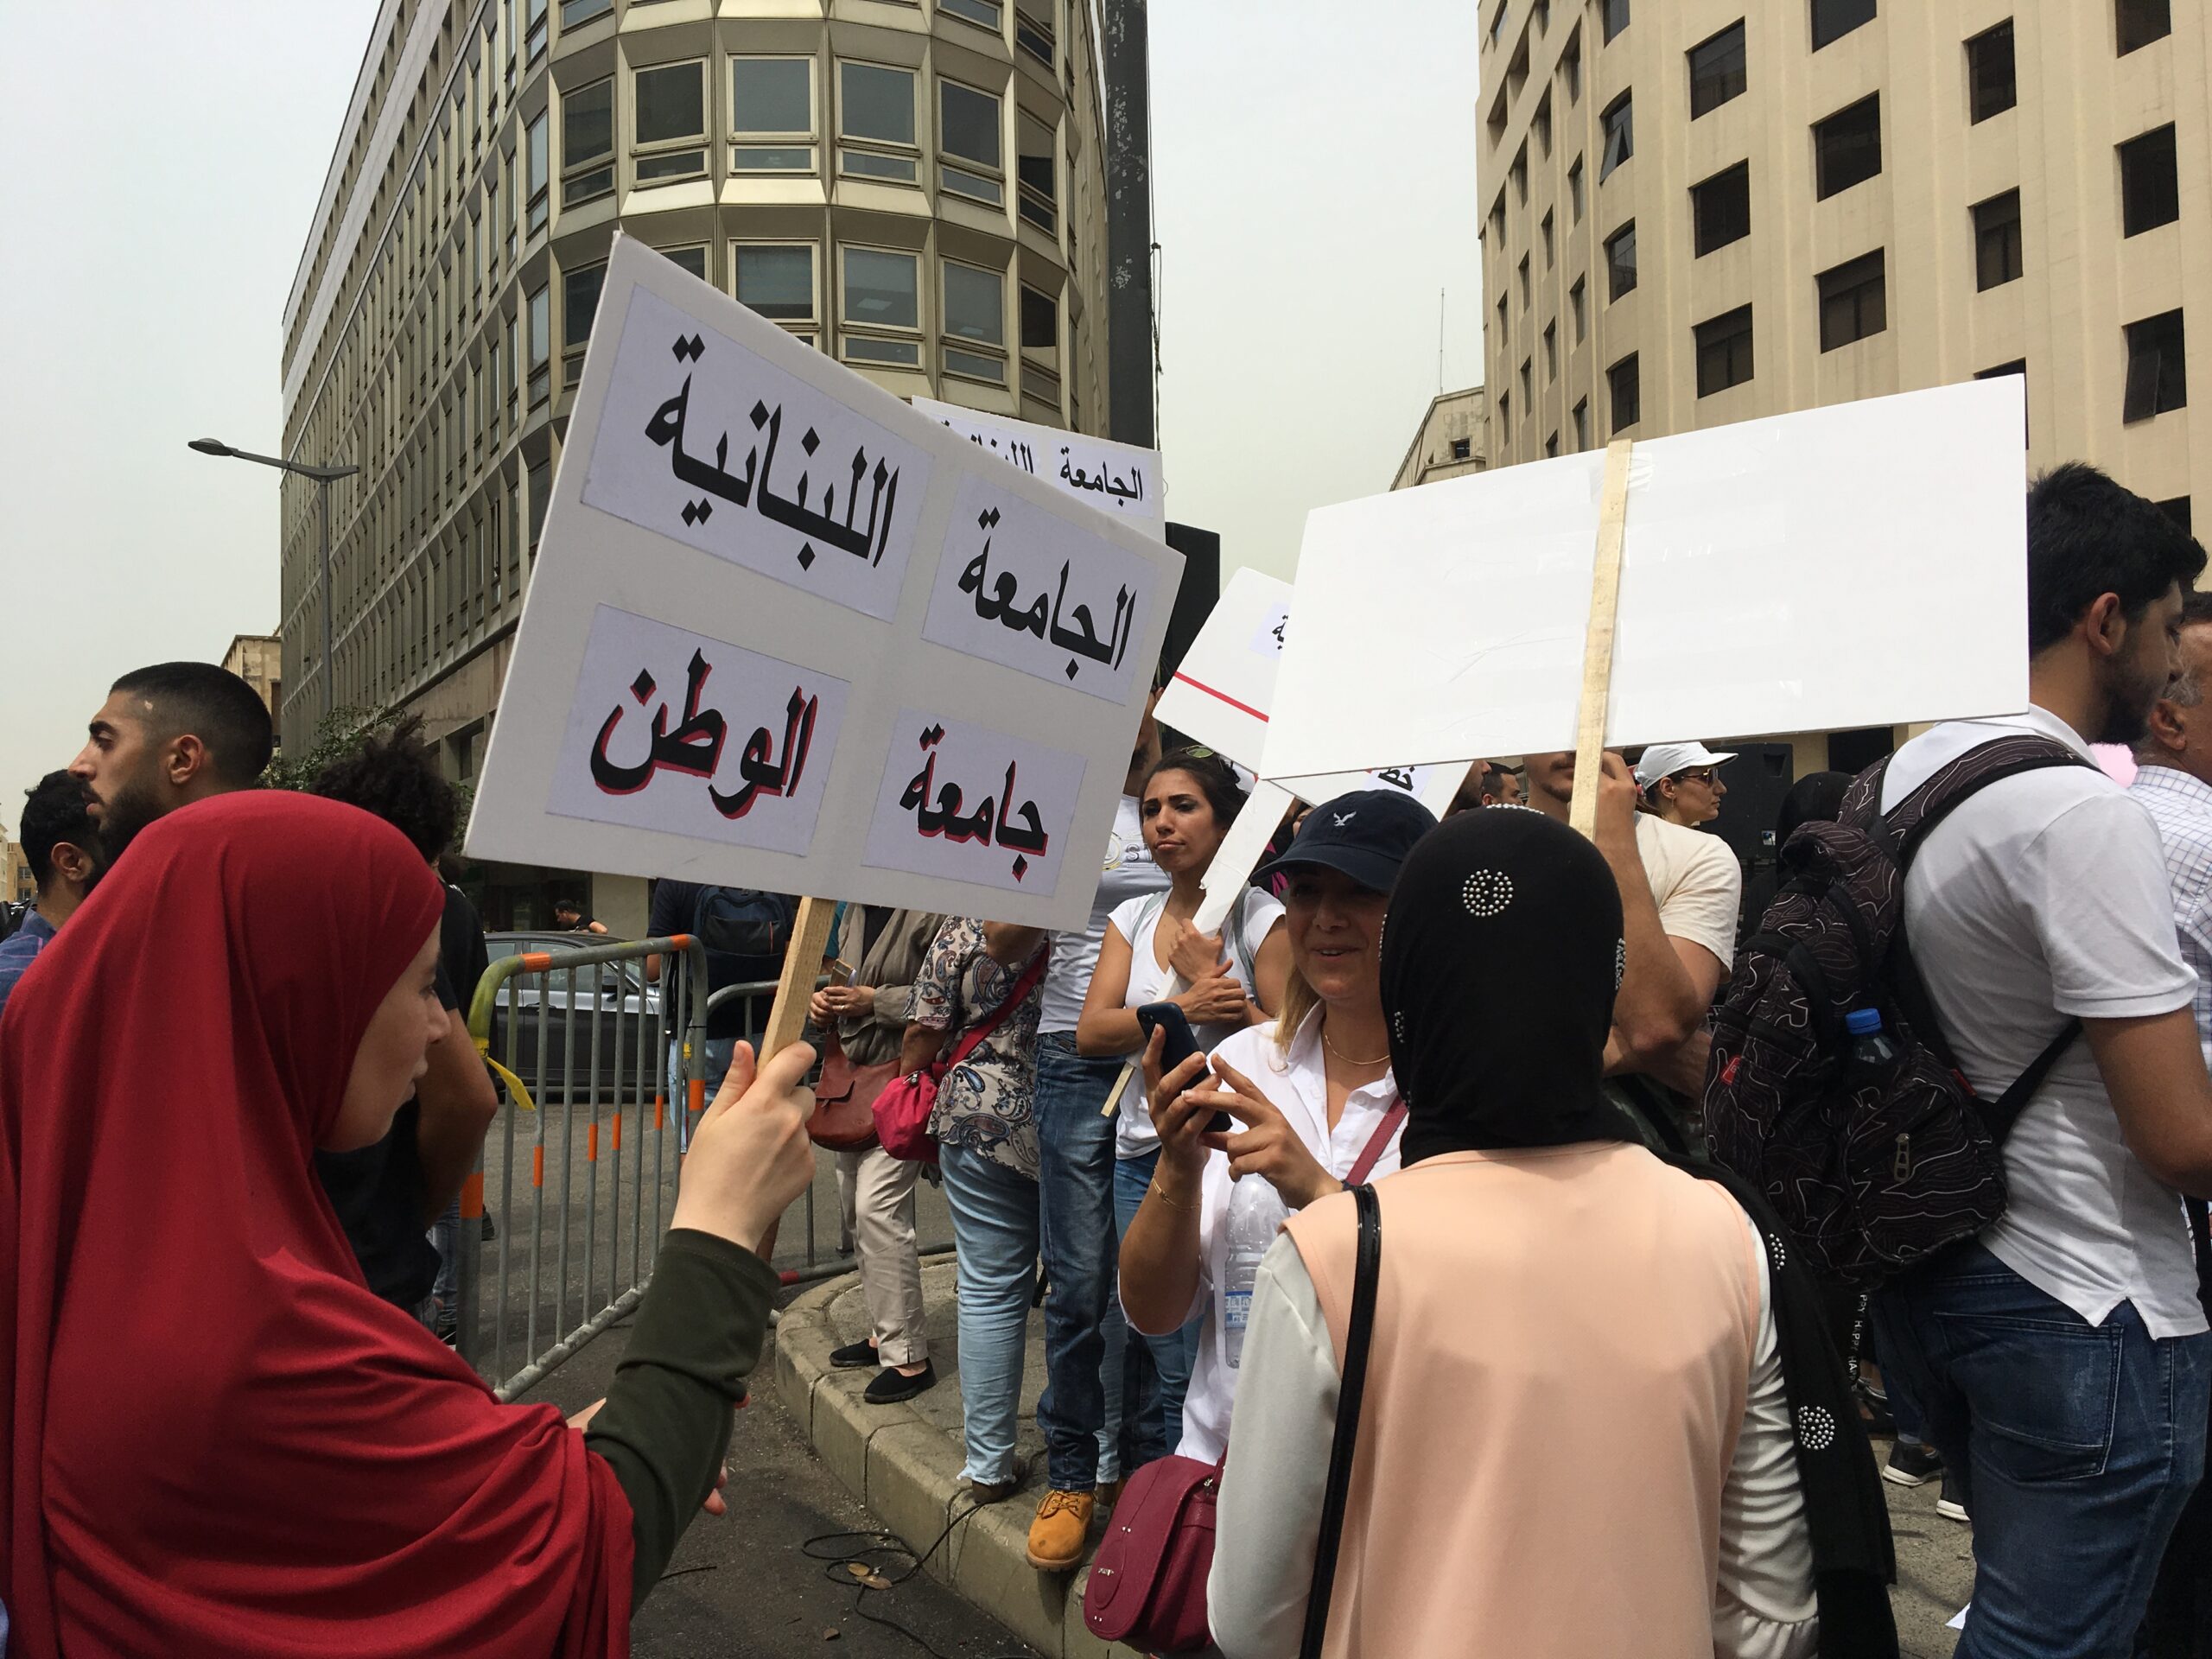 إضراب أساتذة الجامعة اللبنانية: أي أساتذة؟ أي أسباب؟ أي أفق للإضراب؟